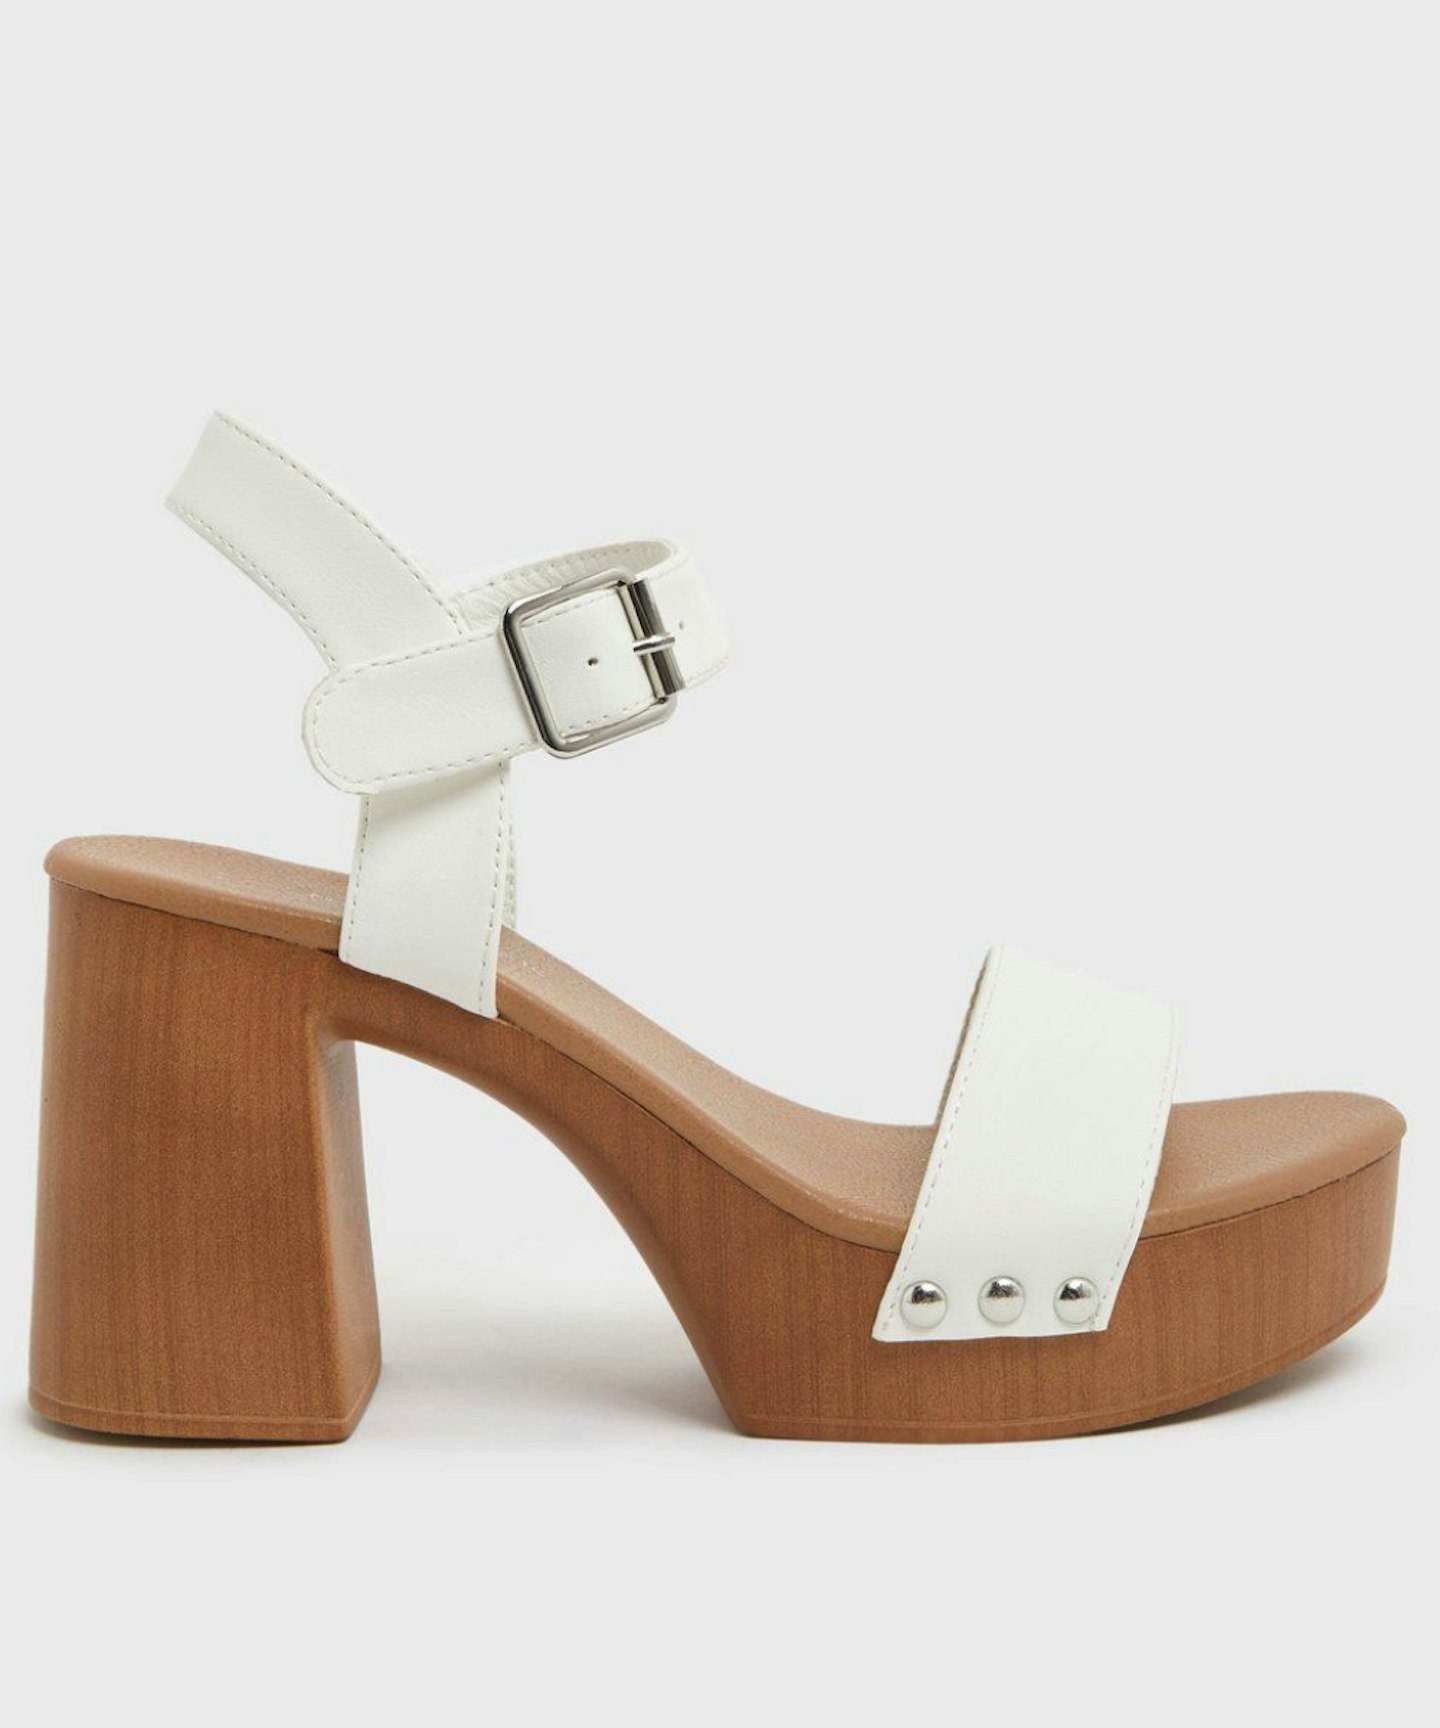 Zara's EXACT New Look White Stud Block Heel Sandals